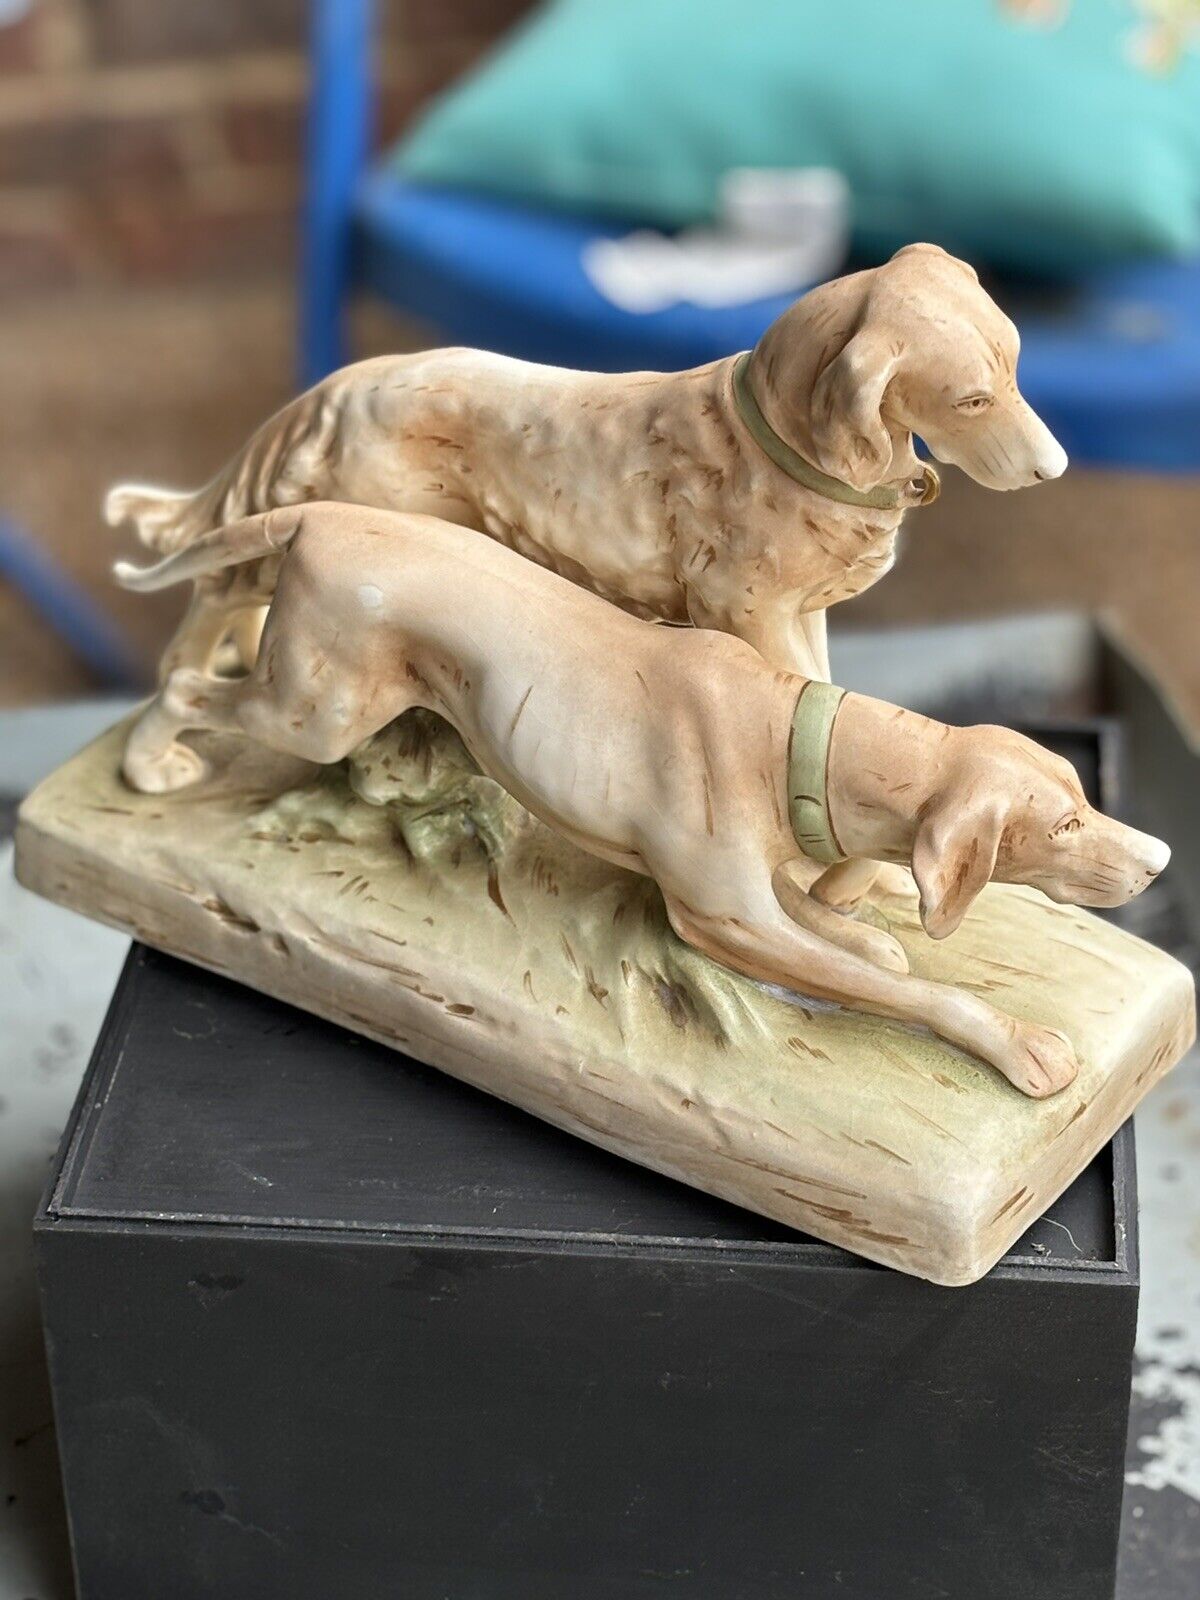 Vintage Royal Dux Porcelain Hunting Dogs Figurine Read Description.  12244 38